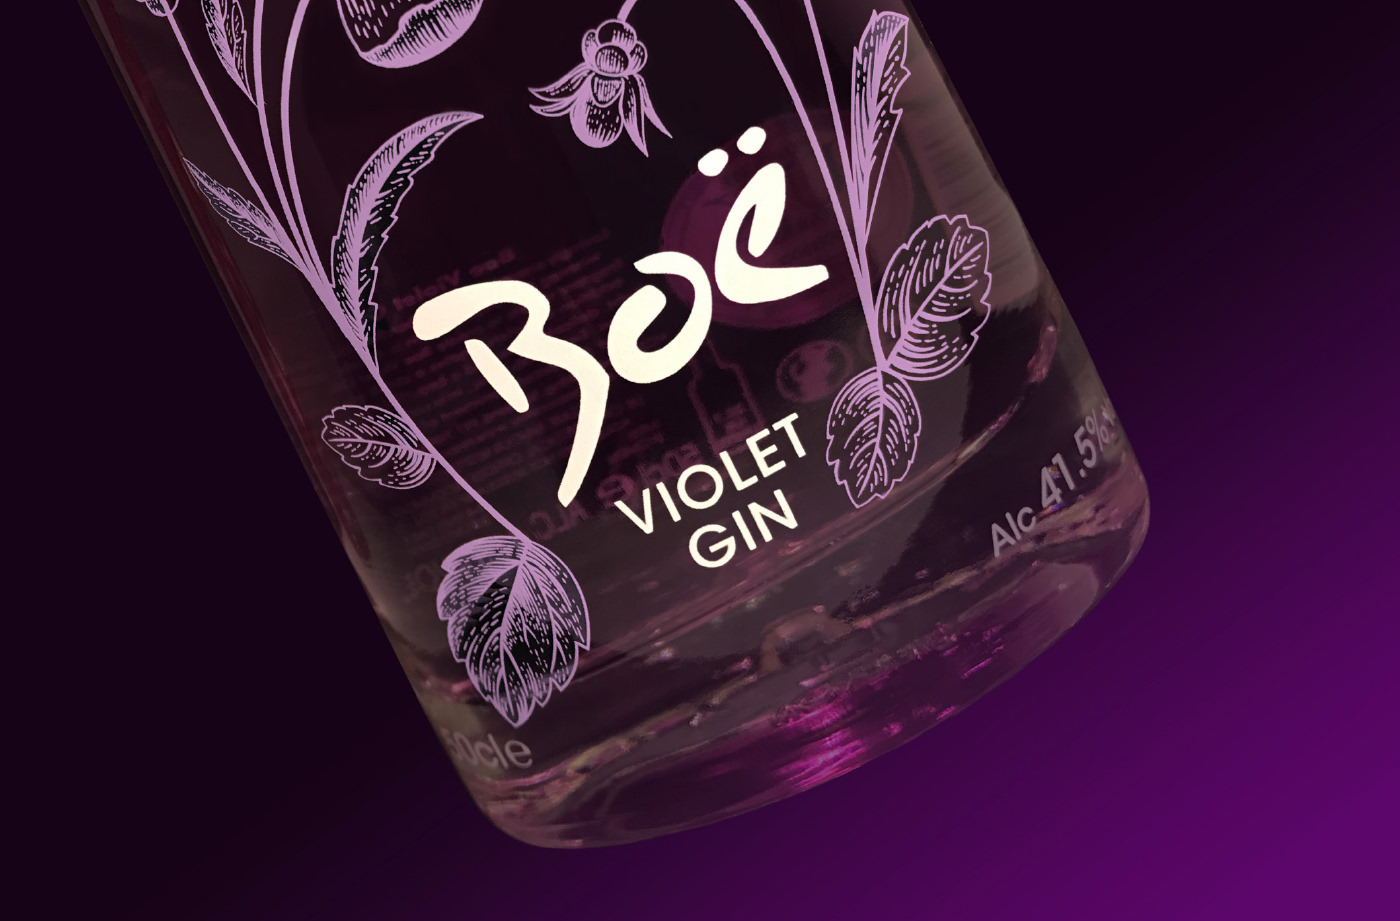 Boe Violet Gin